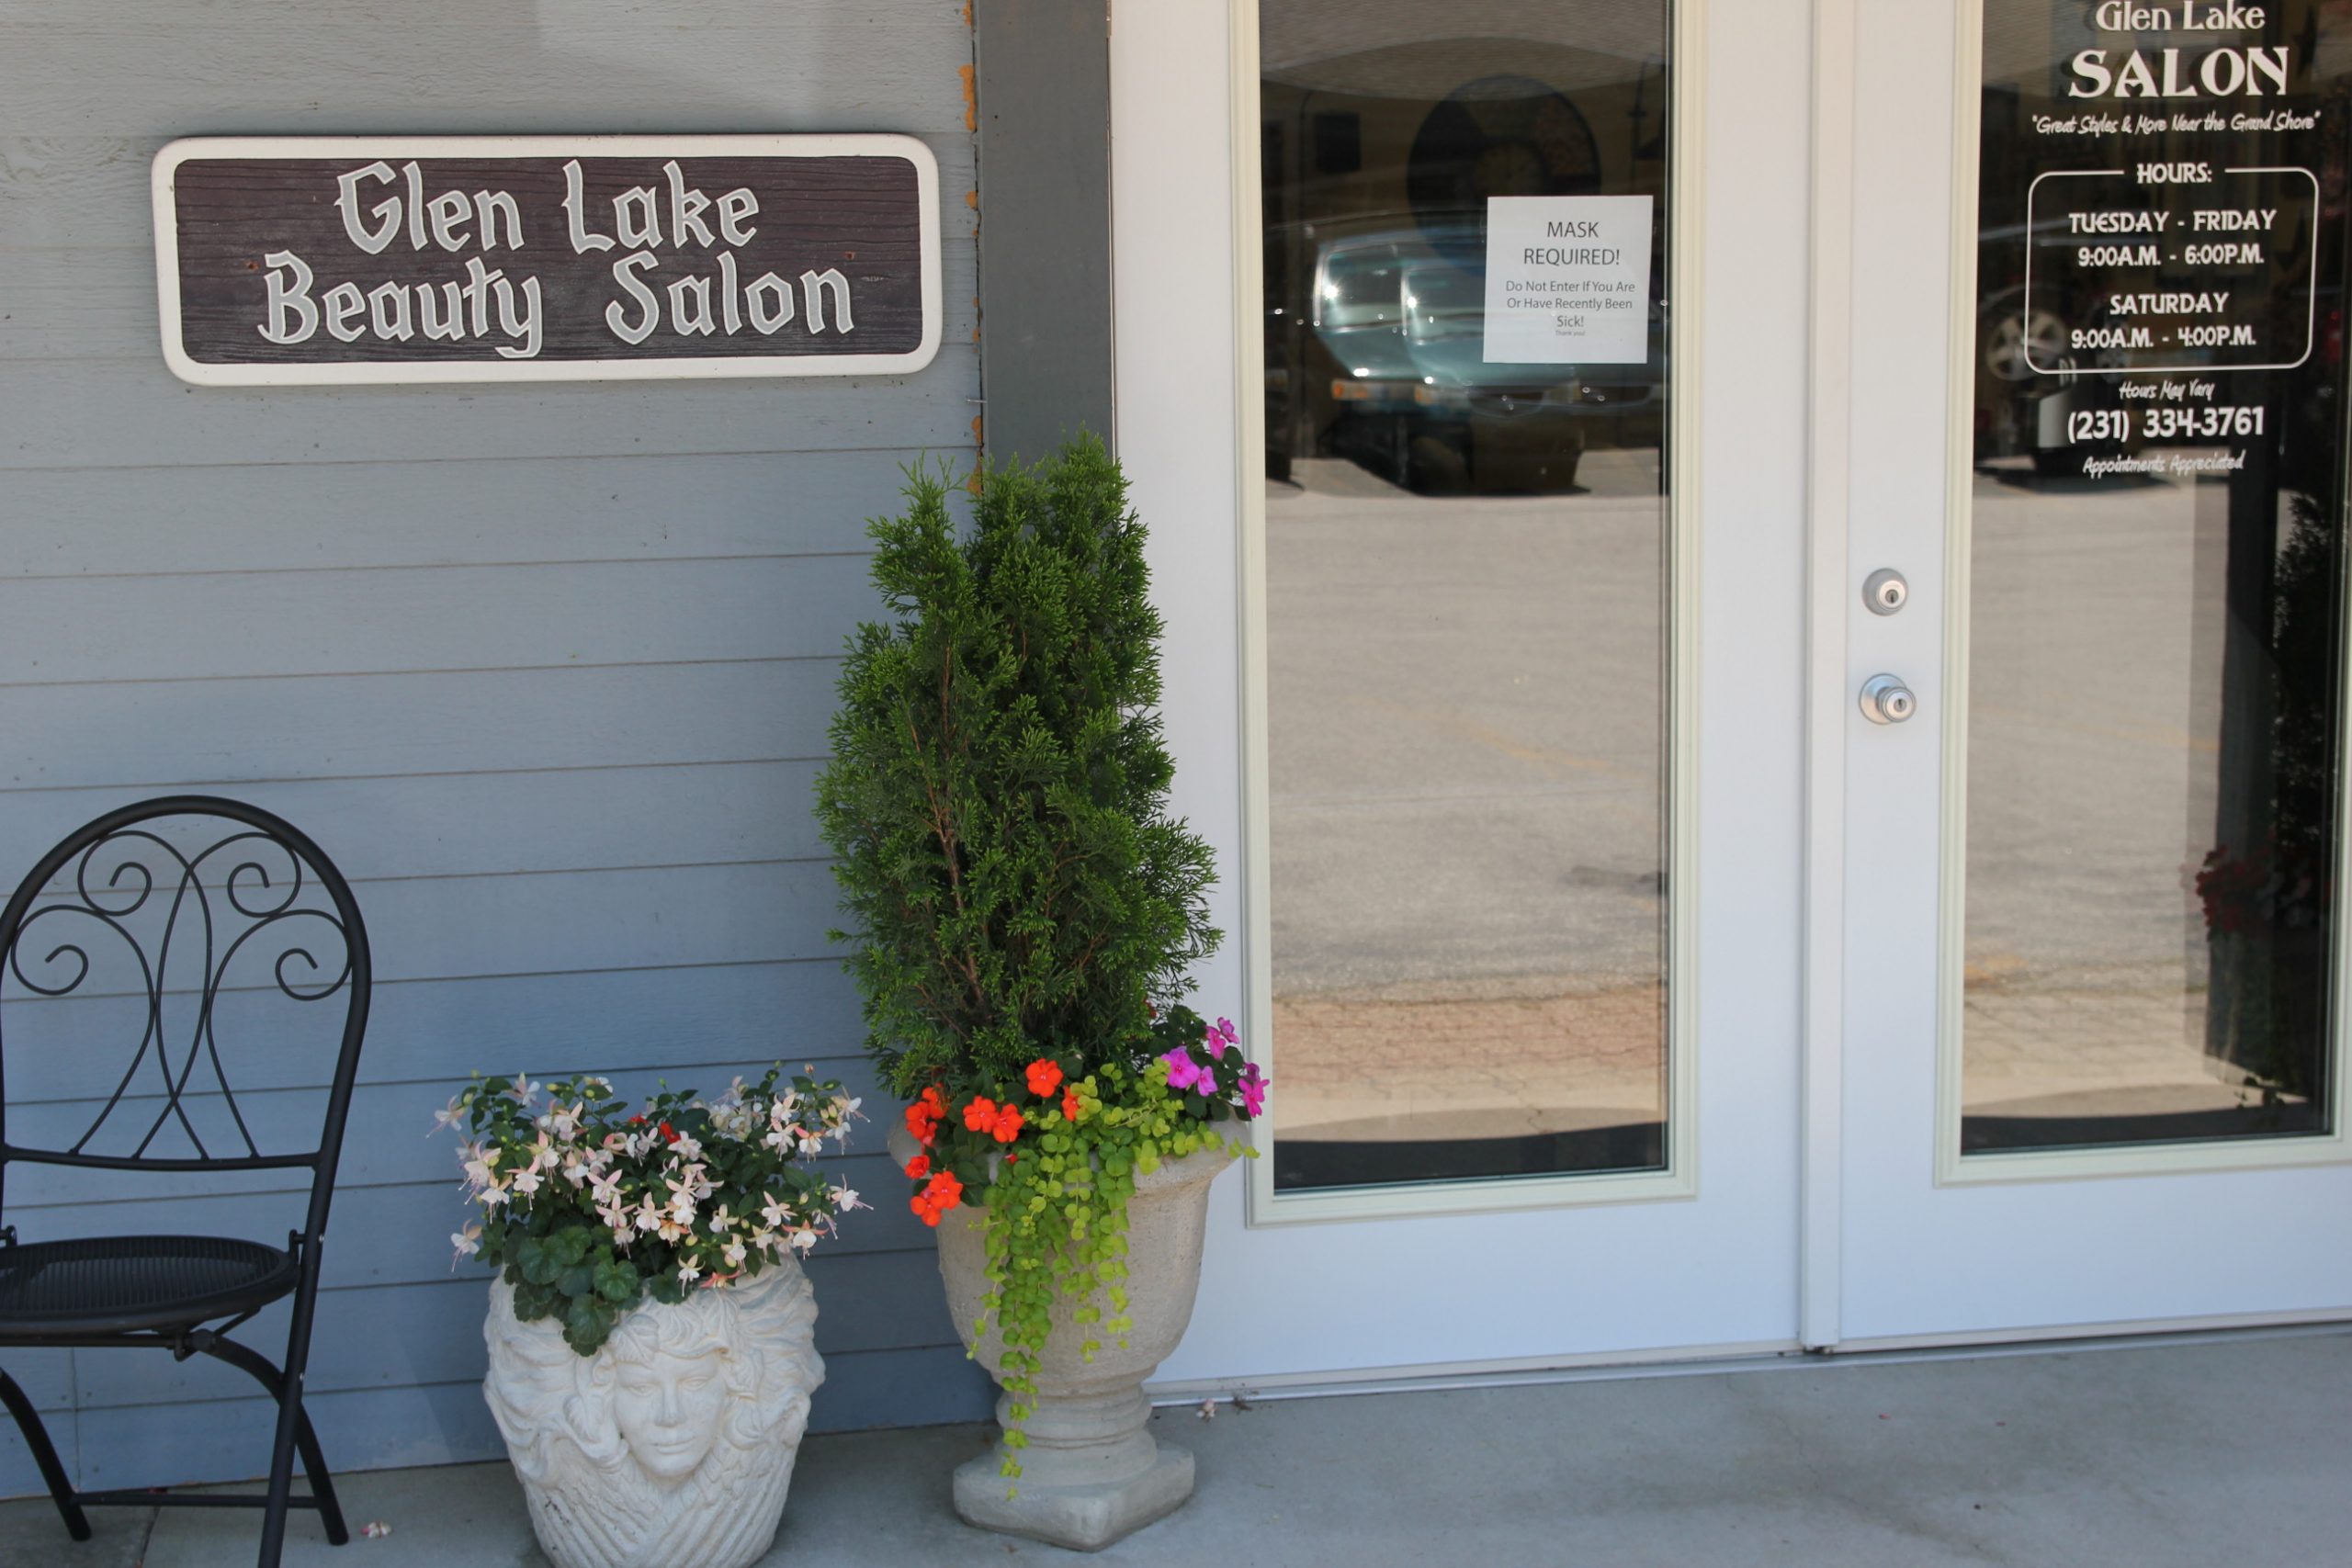 storefront: Glen lake Beauty salon entrance close up